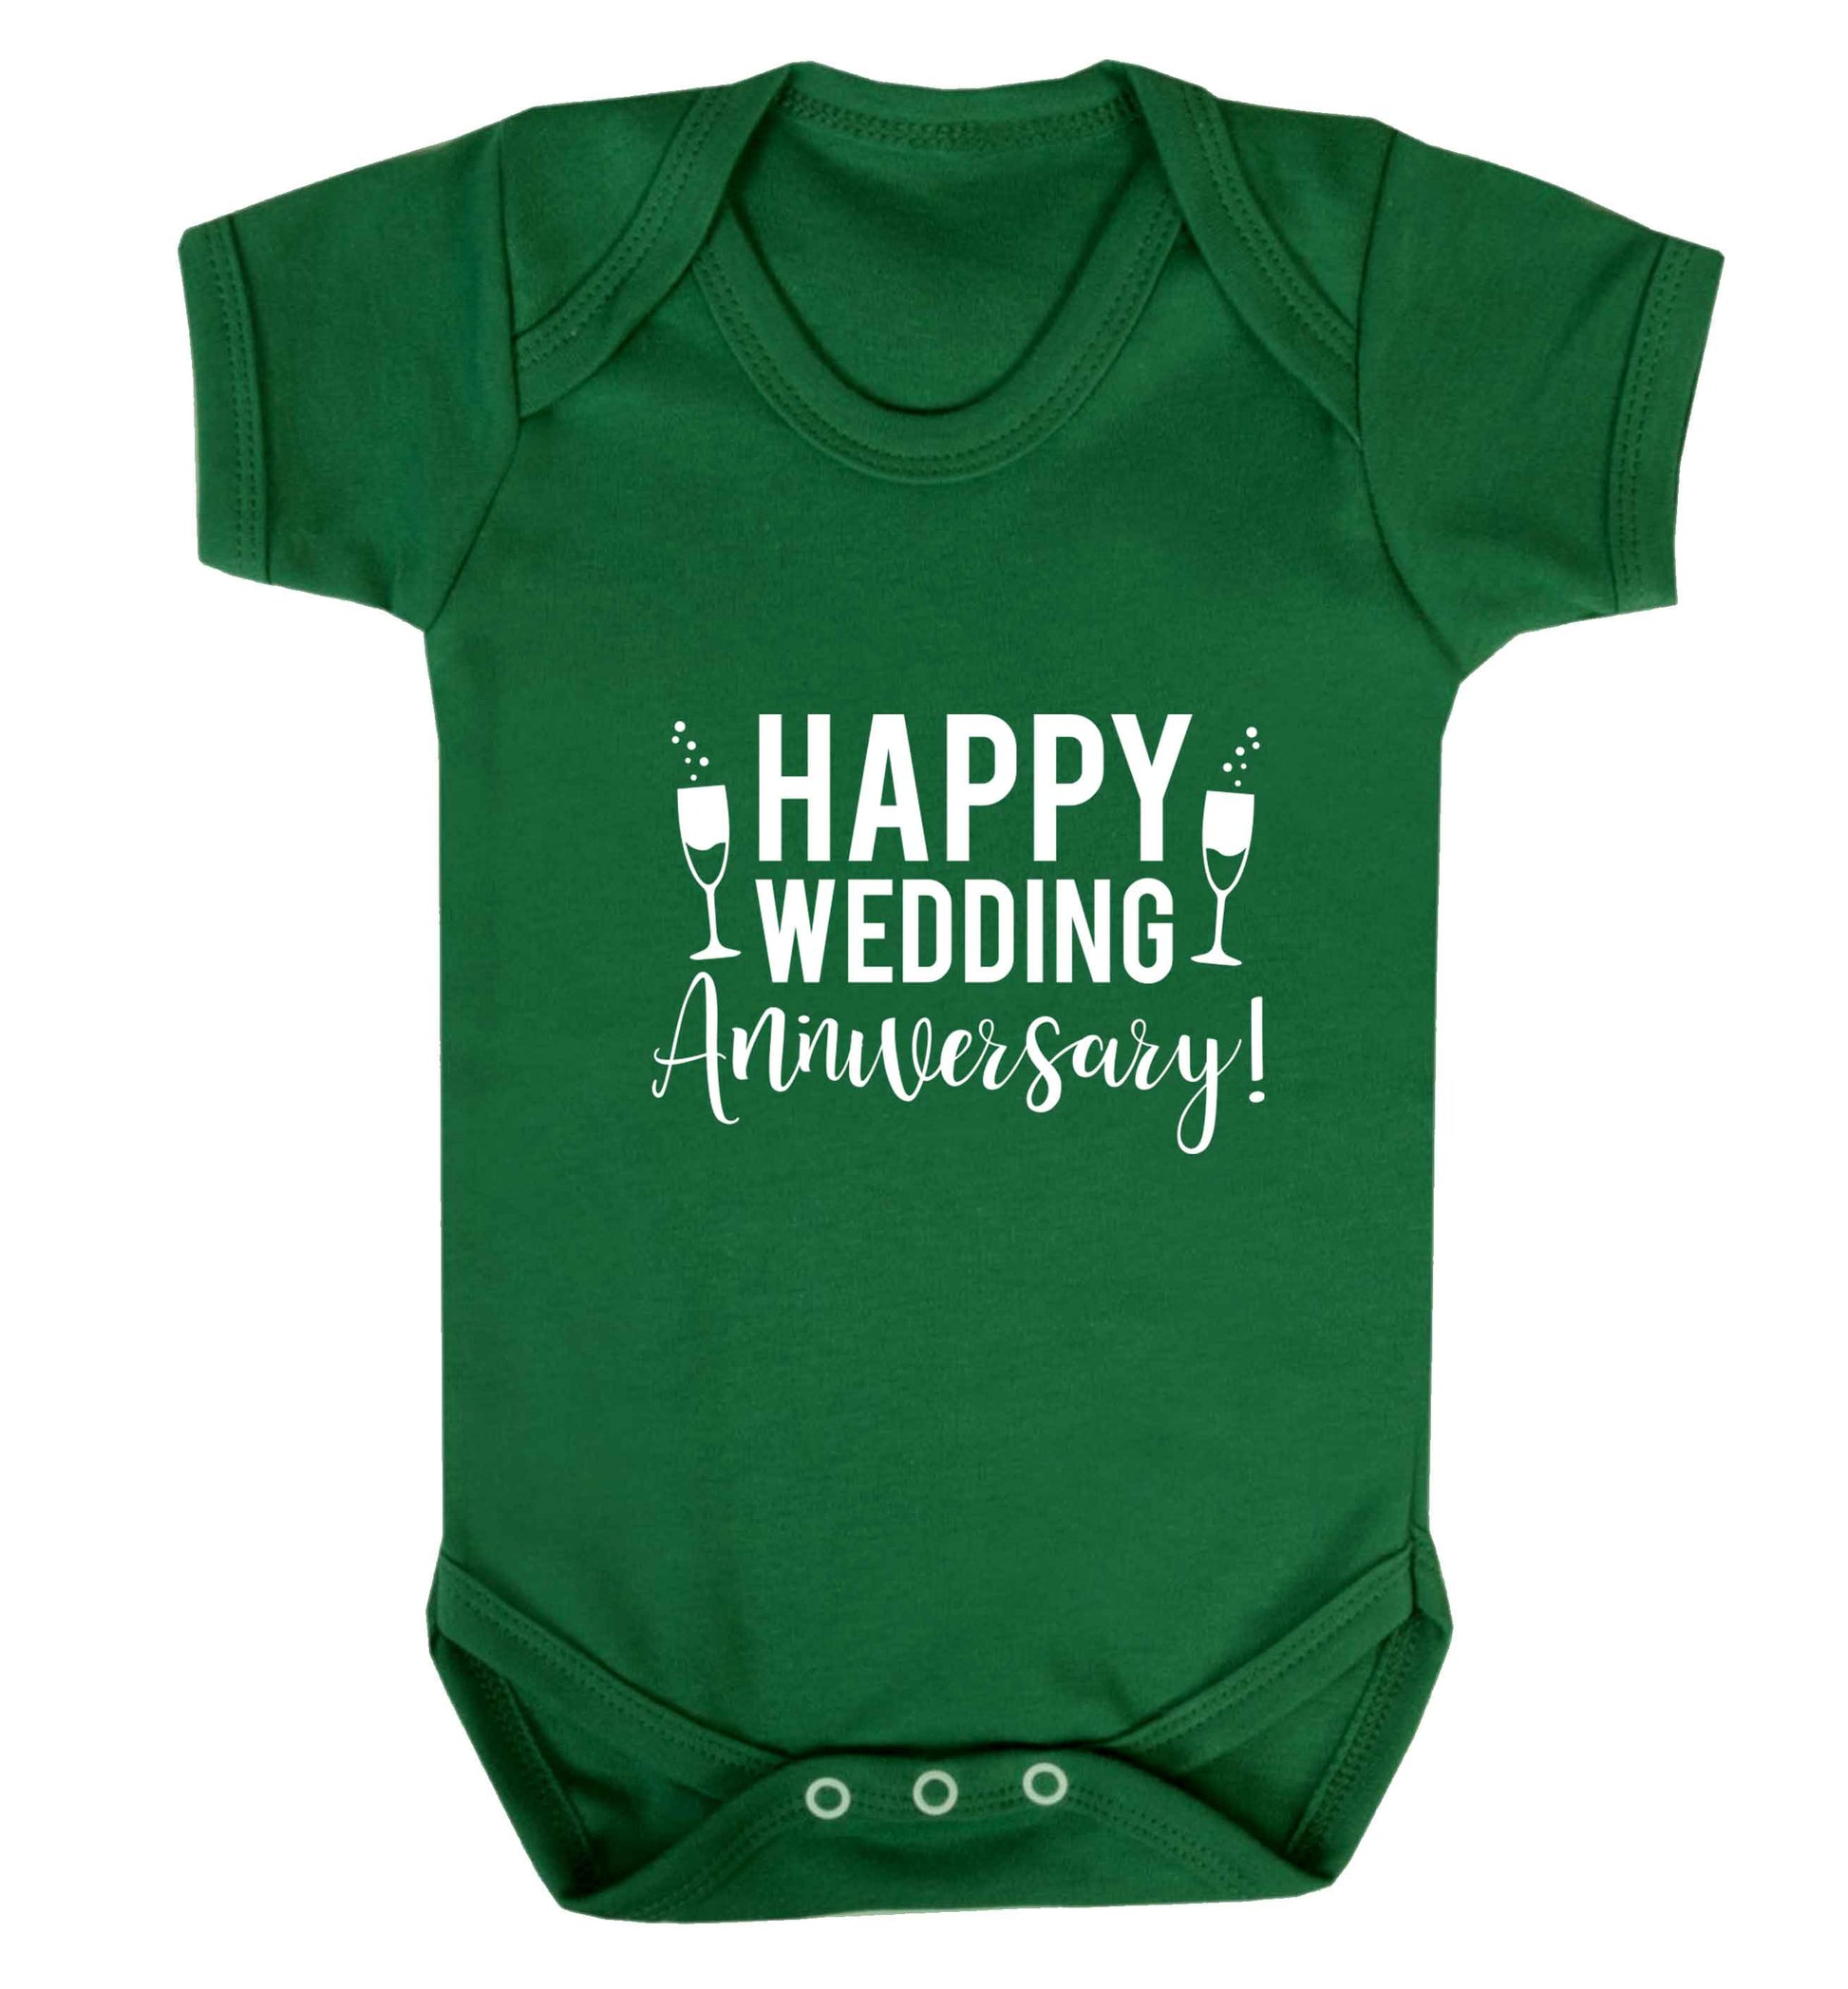 Happy wedding anniversary! baby vest green 18-24 months